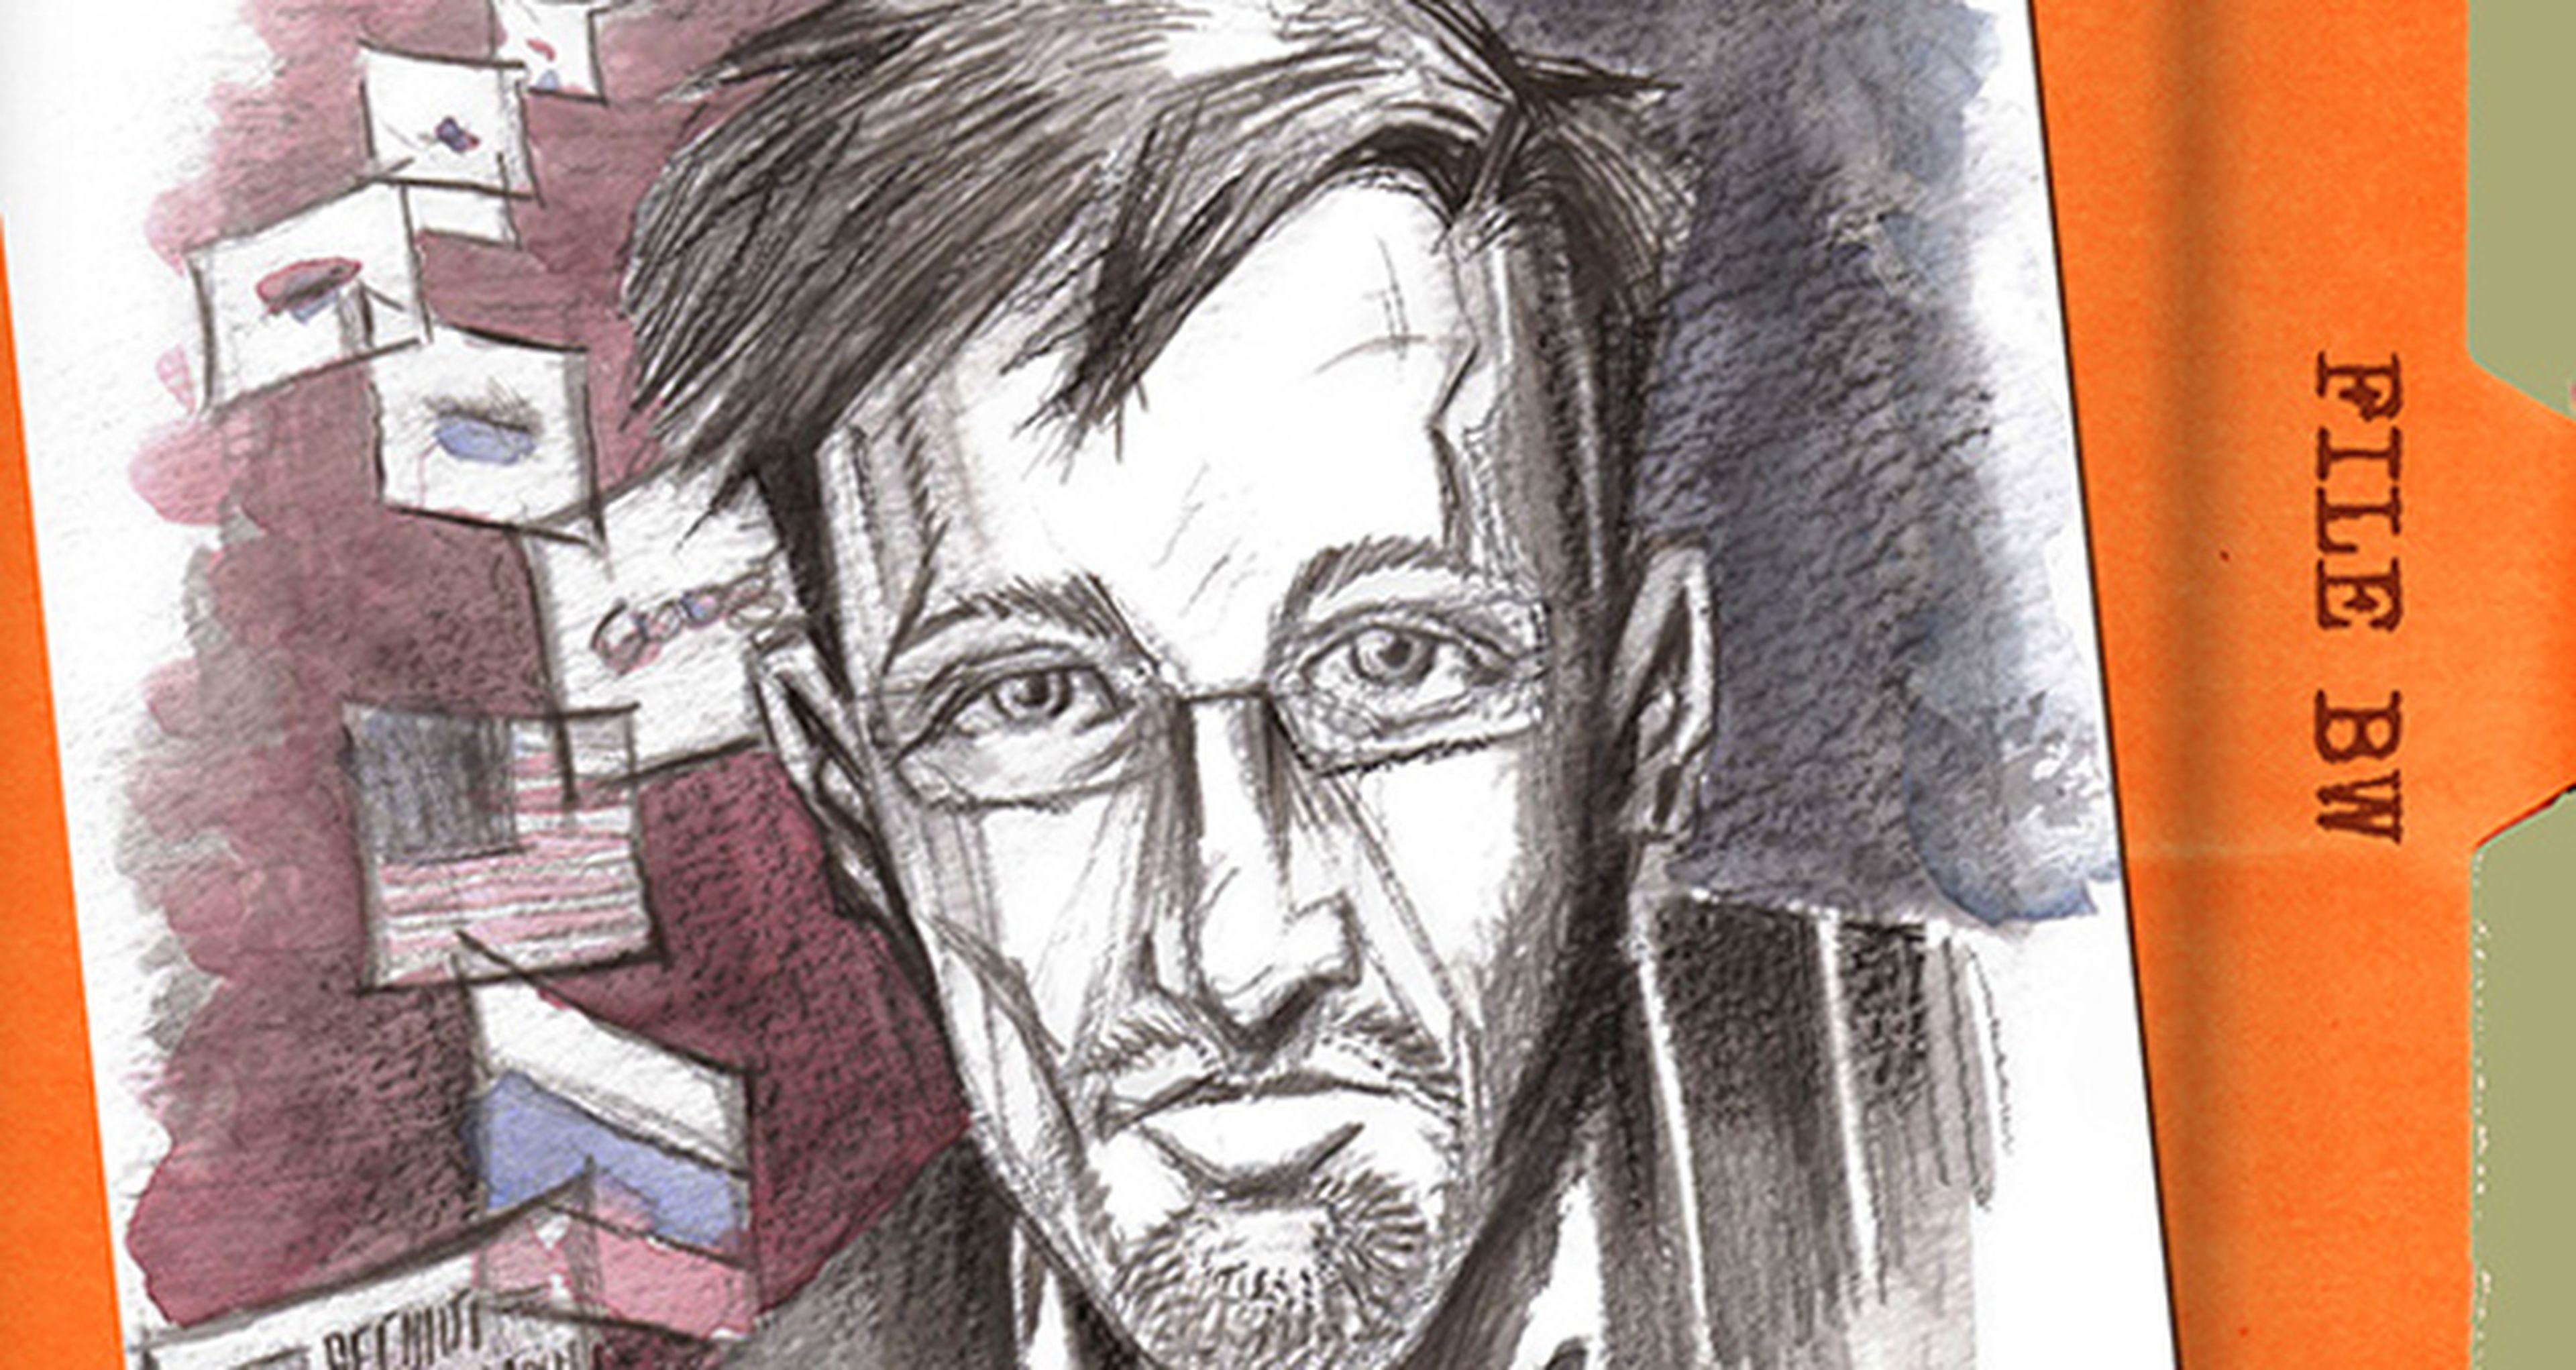 Sale a la venta el cómic de Edward Snowden